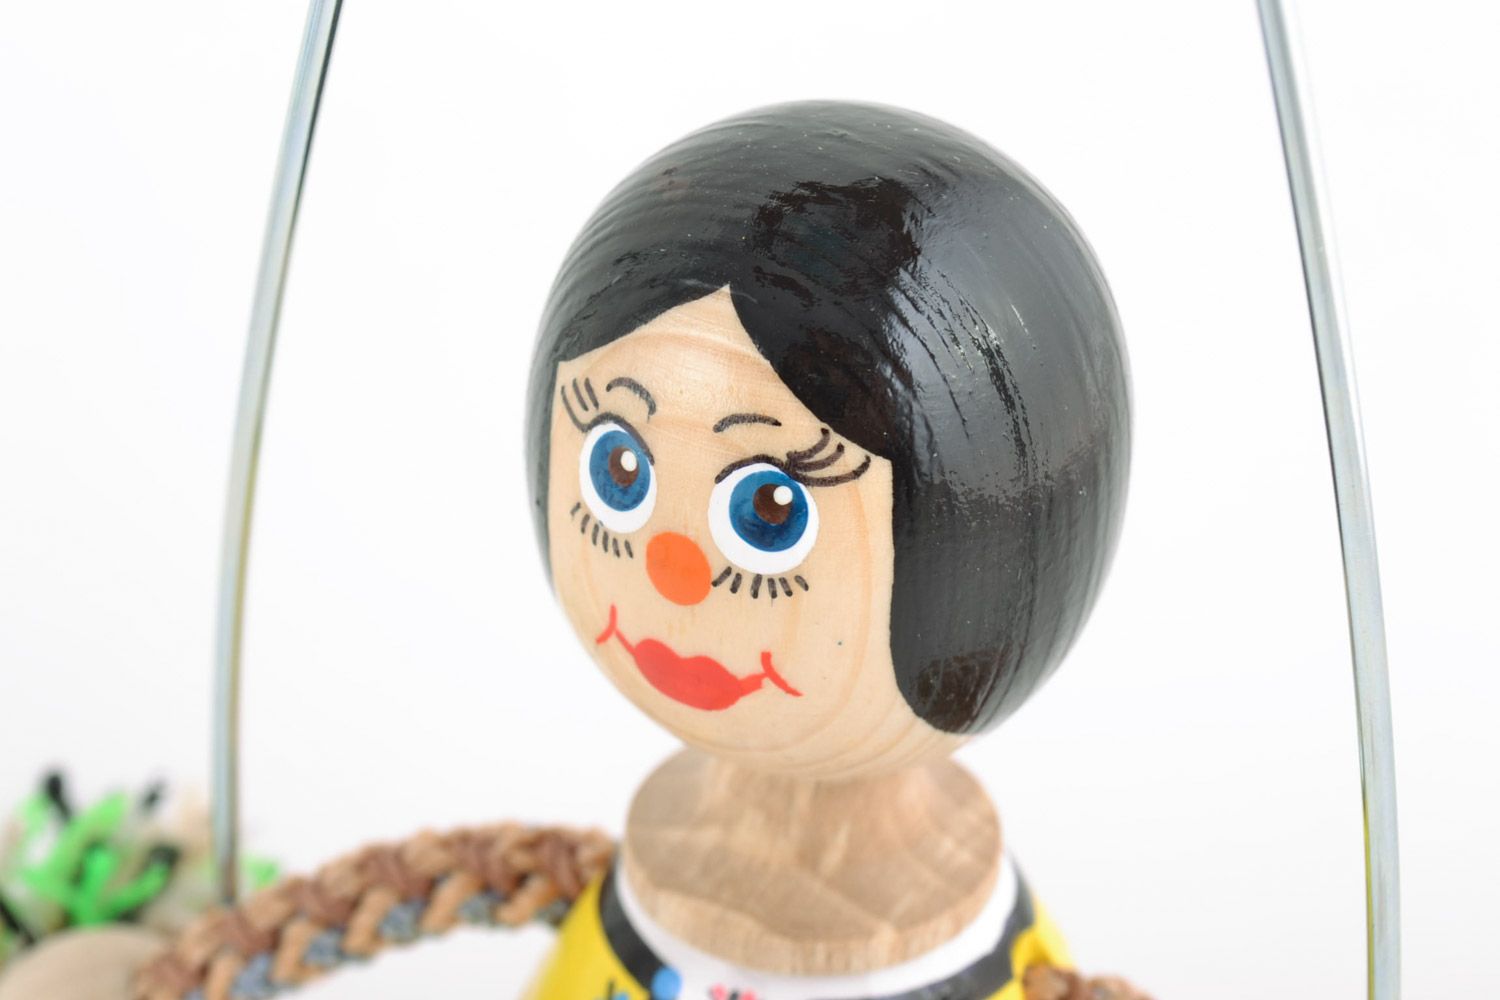 Оригинальная экологически чистая деревянная кукла на лавочке Девочка хэнд мэйд фото 4